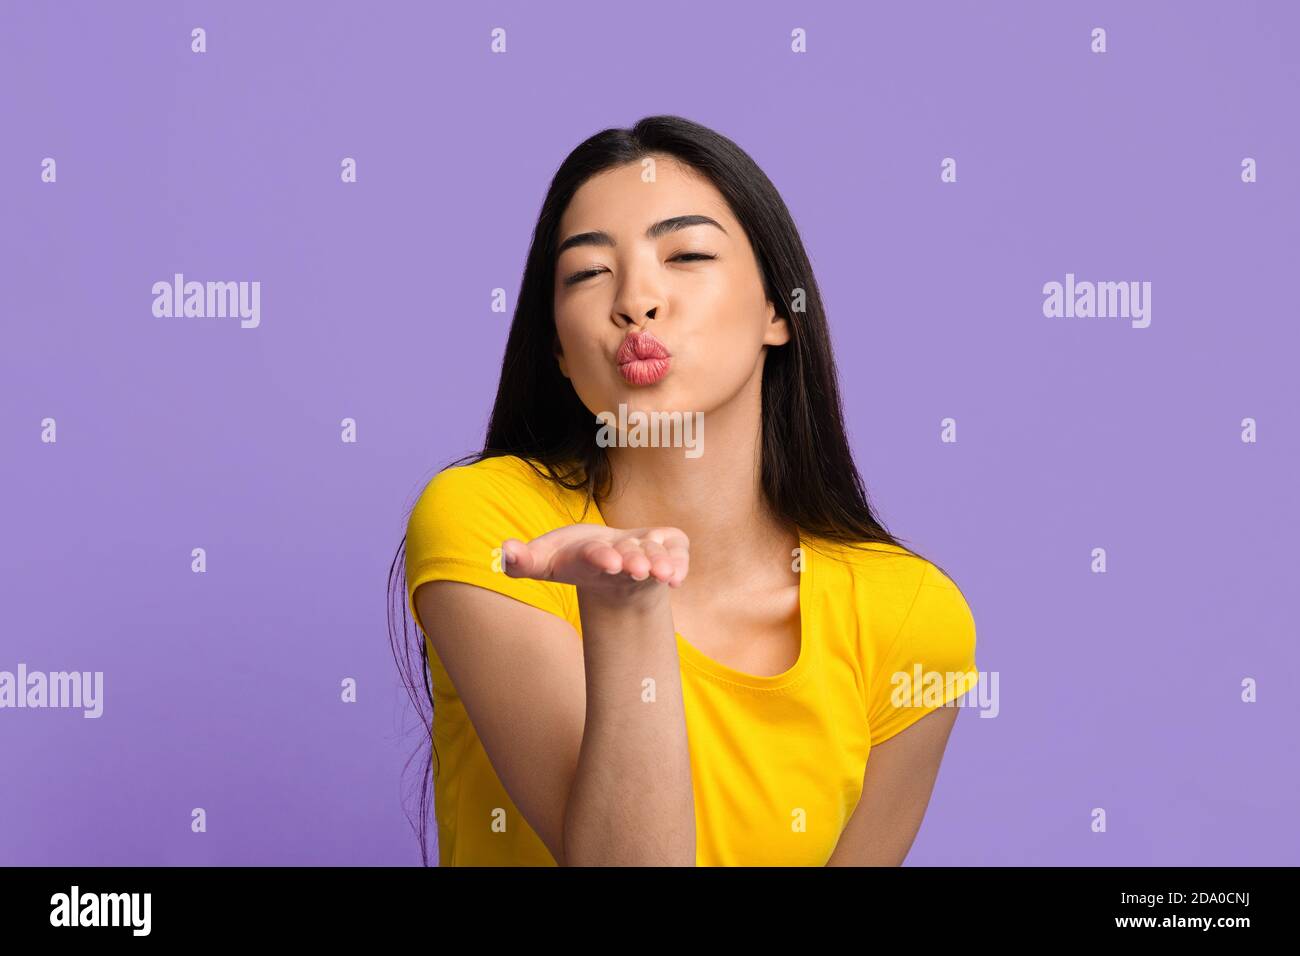 Mignonne jeune femme asiatique soufflant de l'air Kiss à la caméra plus Fond violet Banque D'Images